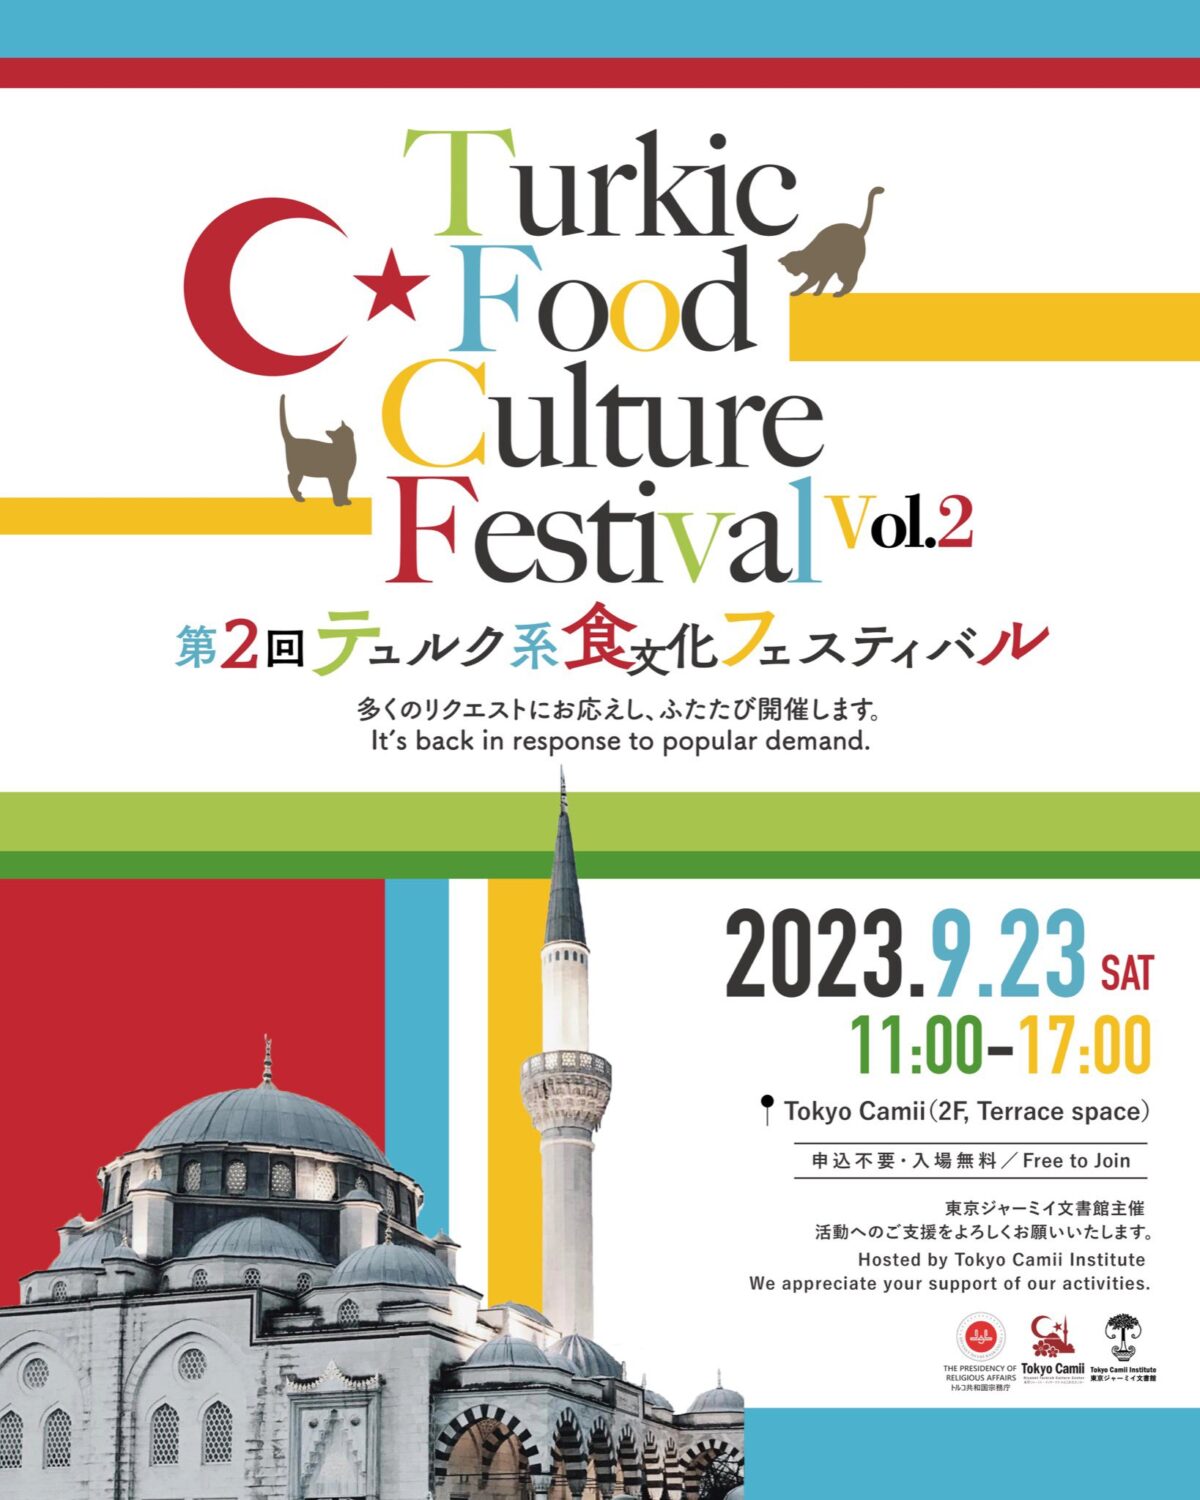 2023年9月23日(土) 第2回 テュルク系食文化フェスティバル @ 東京ジャーミイ